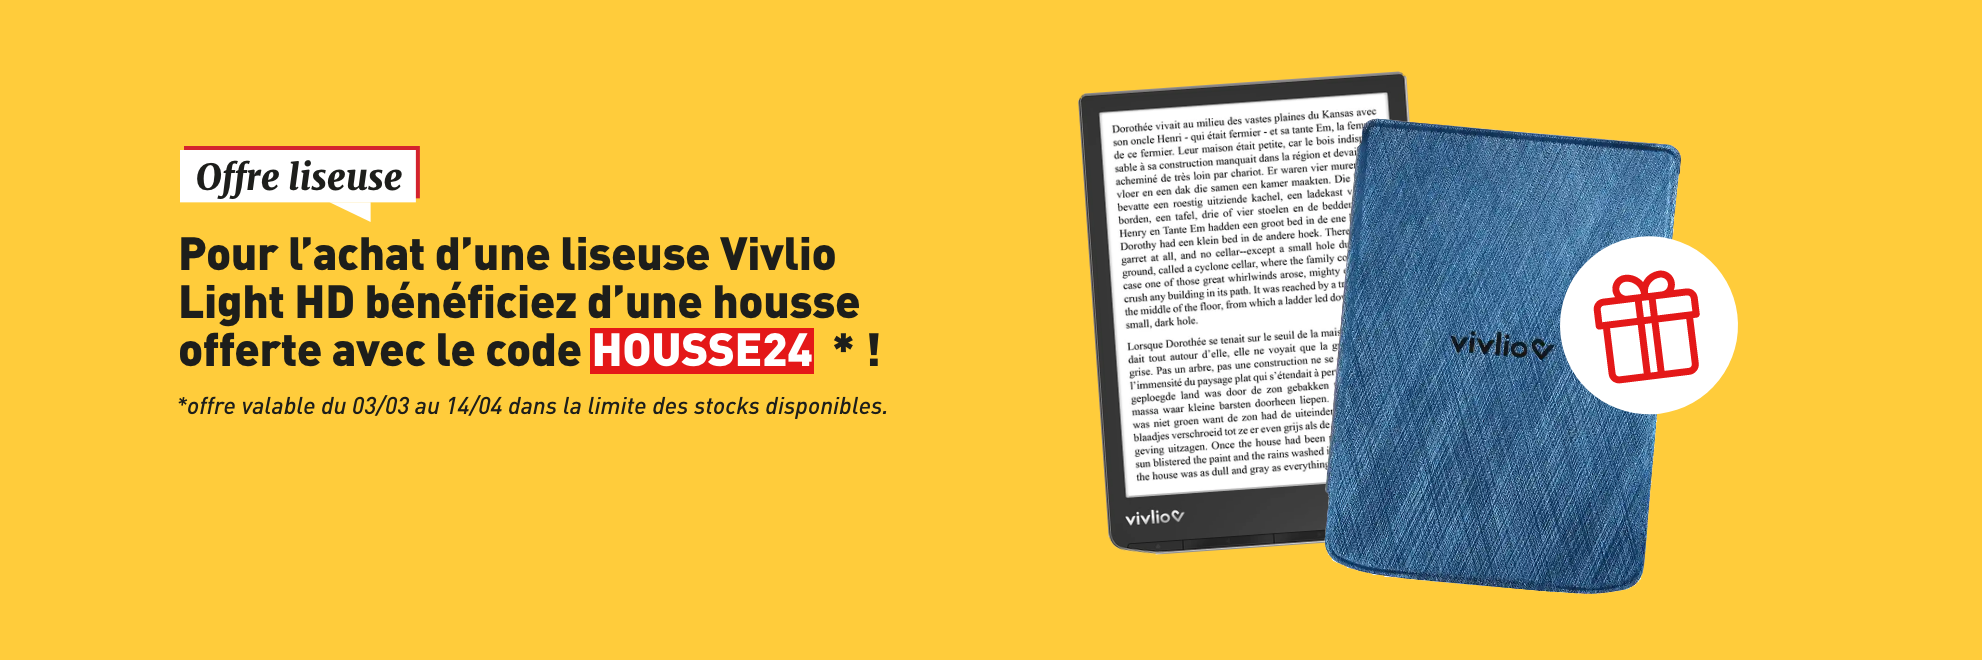 Pour l'achat d'une liseuse Vivlio Light HD bénéficiez d'une housse offerte avec le code HOUSSE24